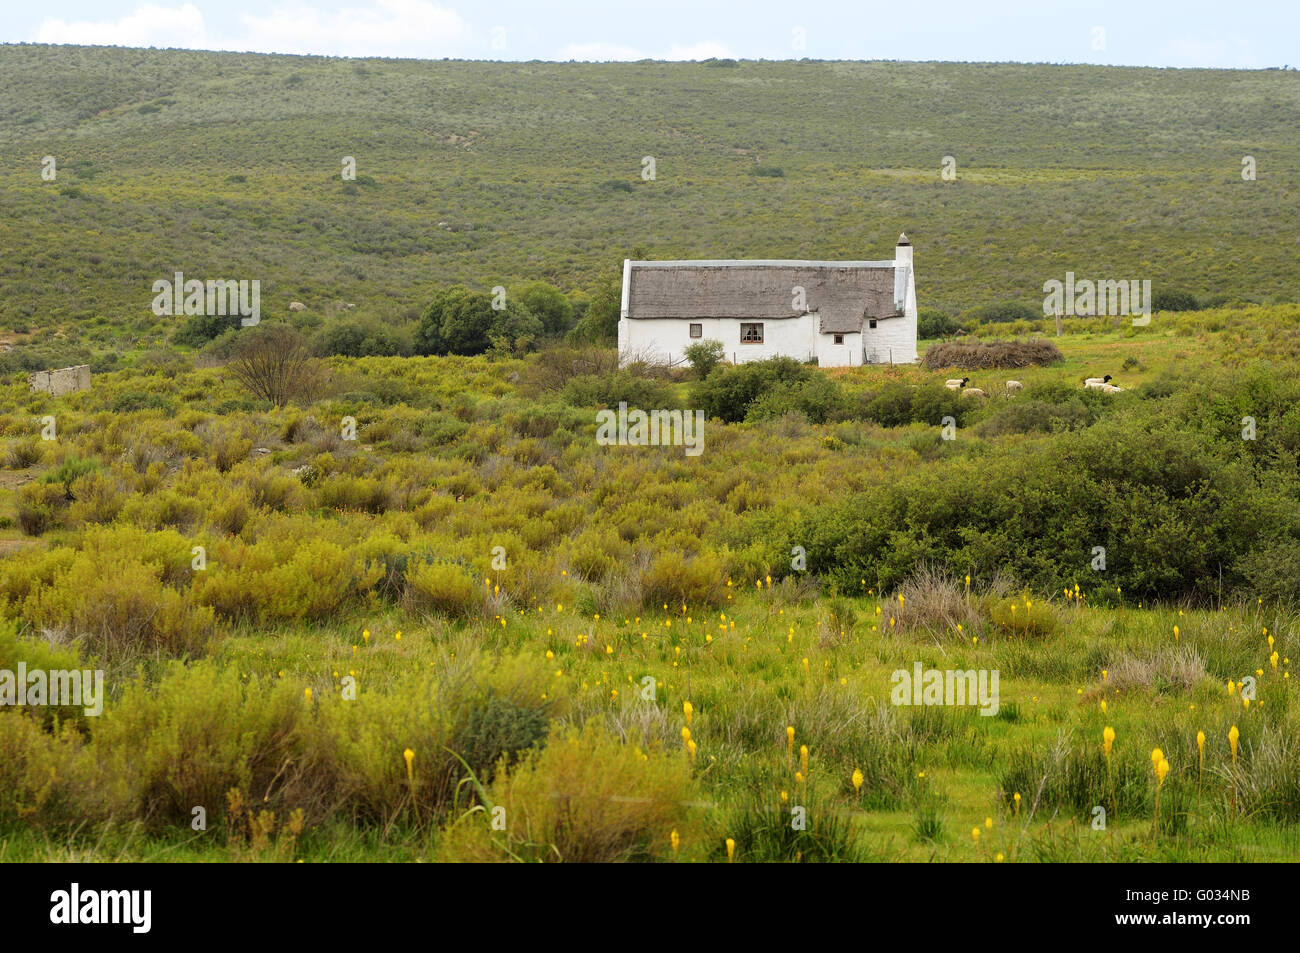 Maison de ferme sur le Plateau du Bokkeveld,Afrique du Sud Banque D'Images